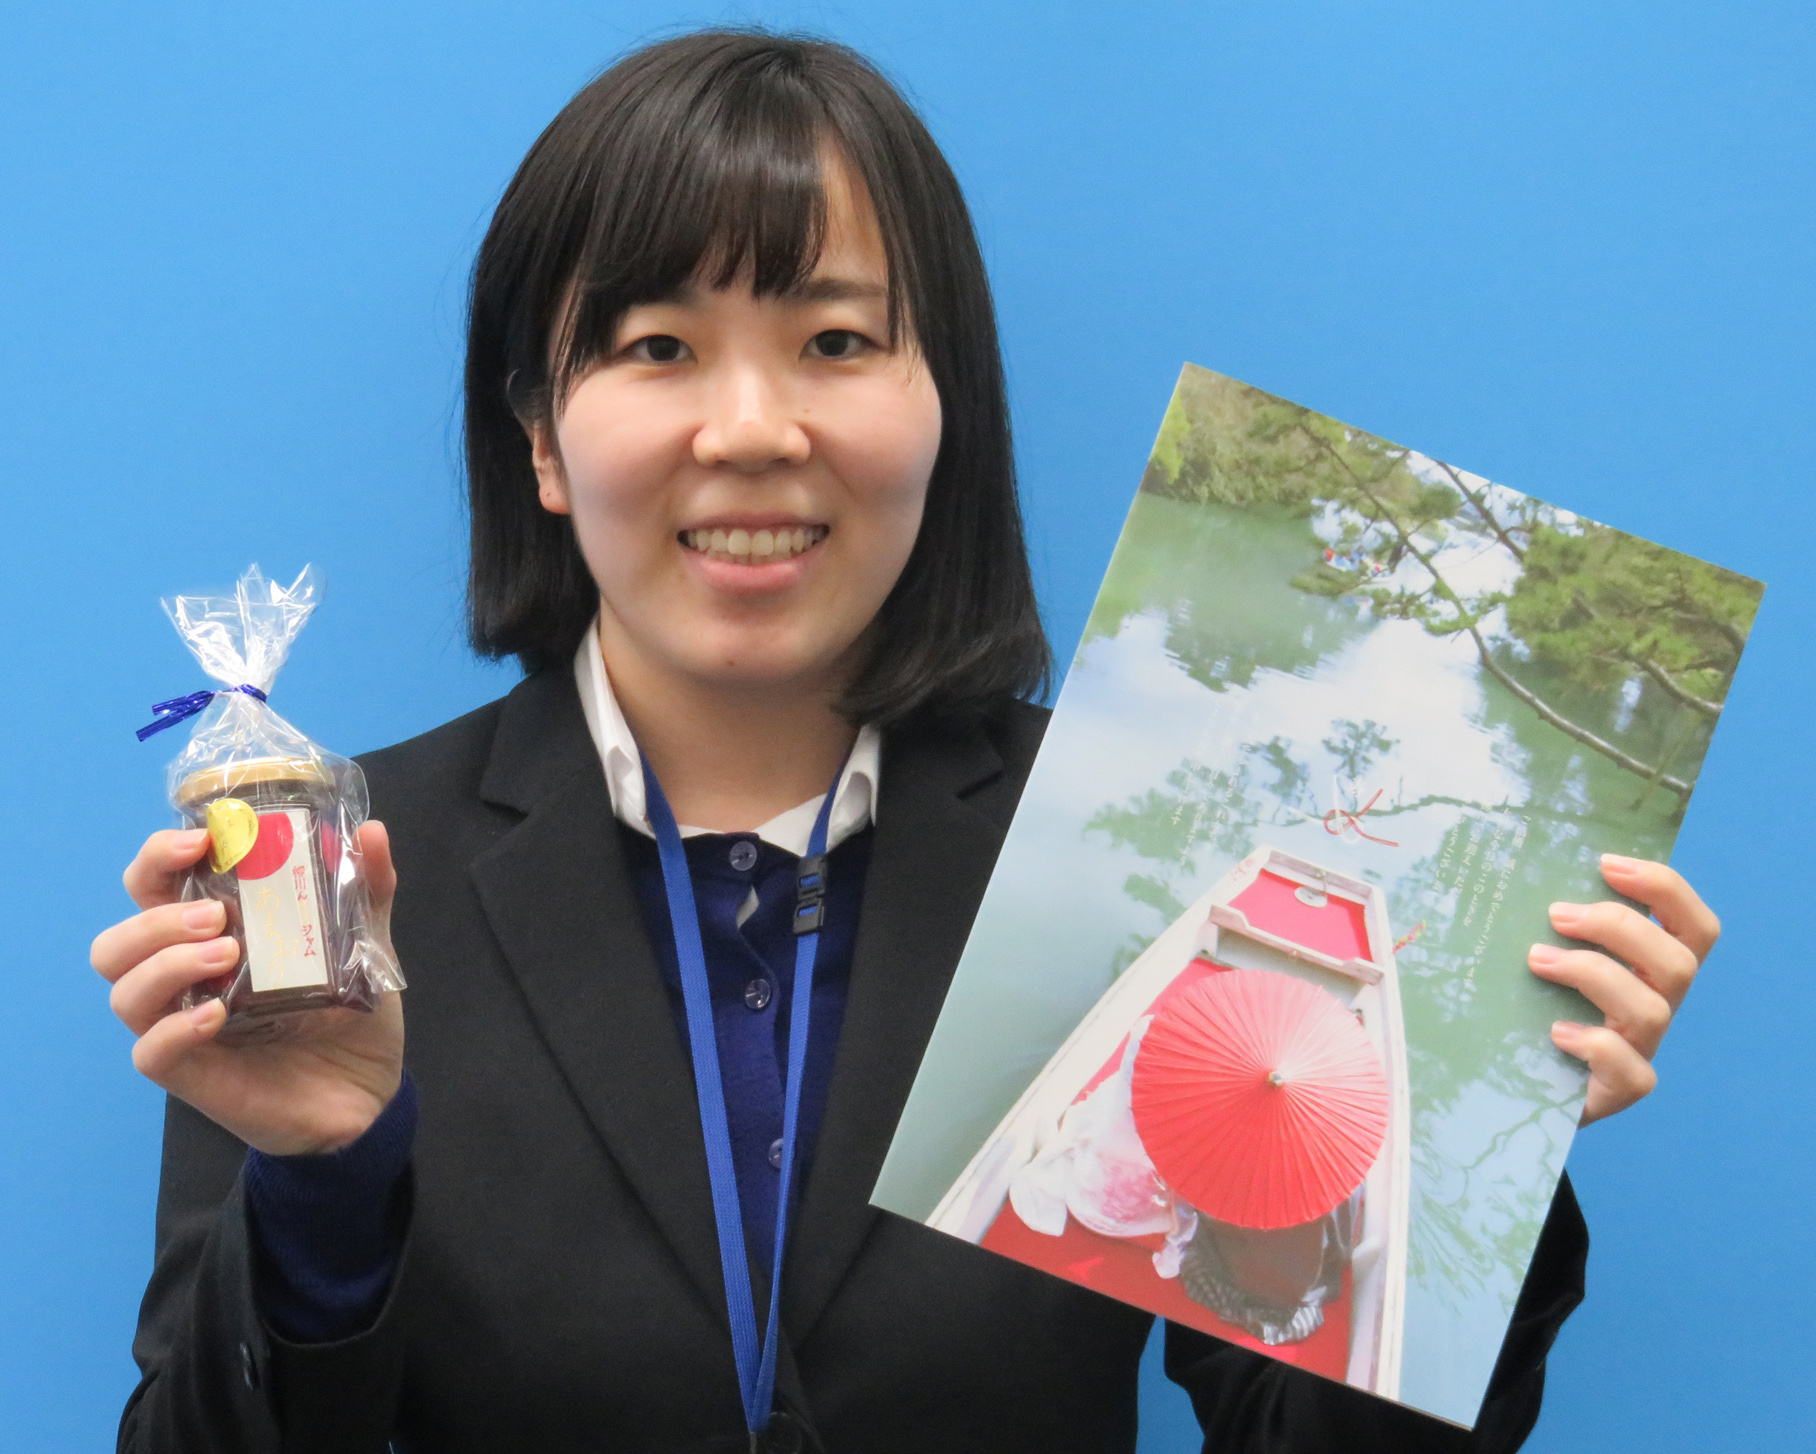 柳川ブランド認定品を持った職員の女性の写真